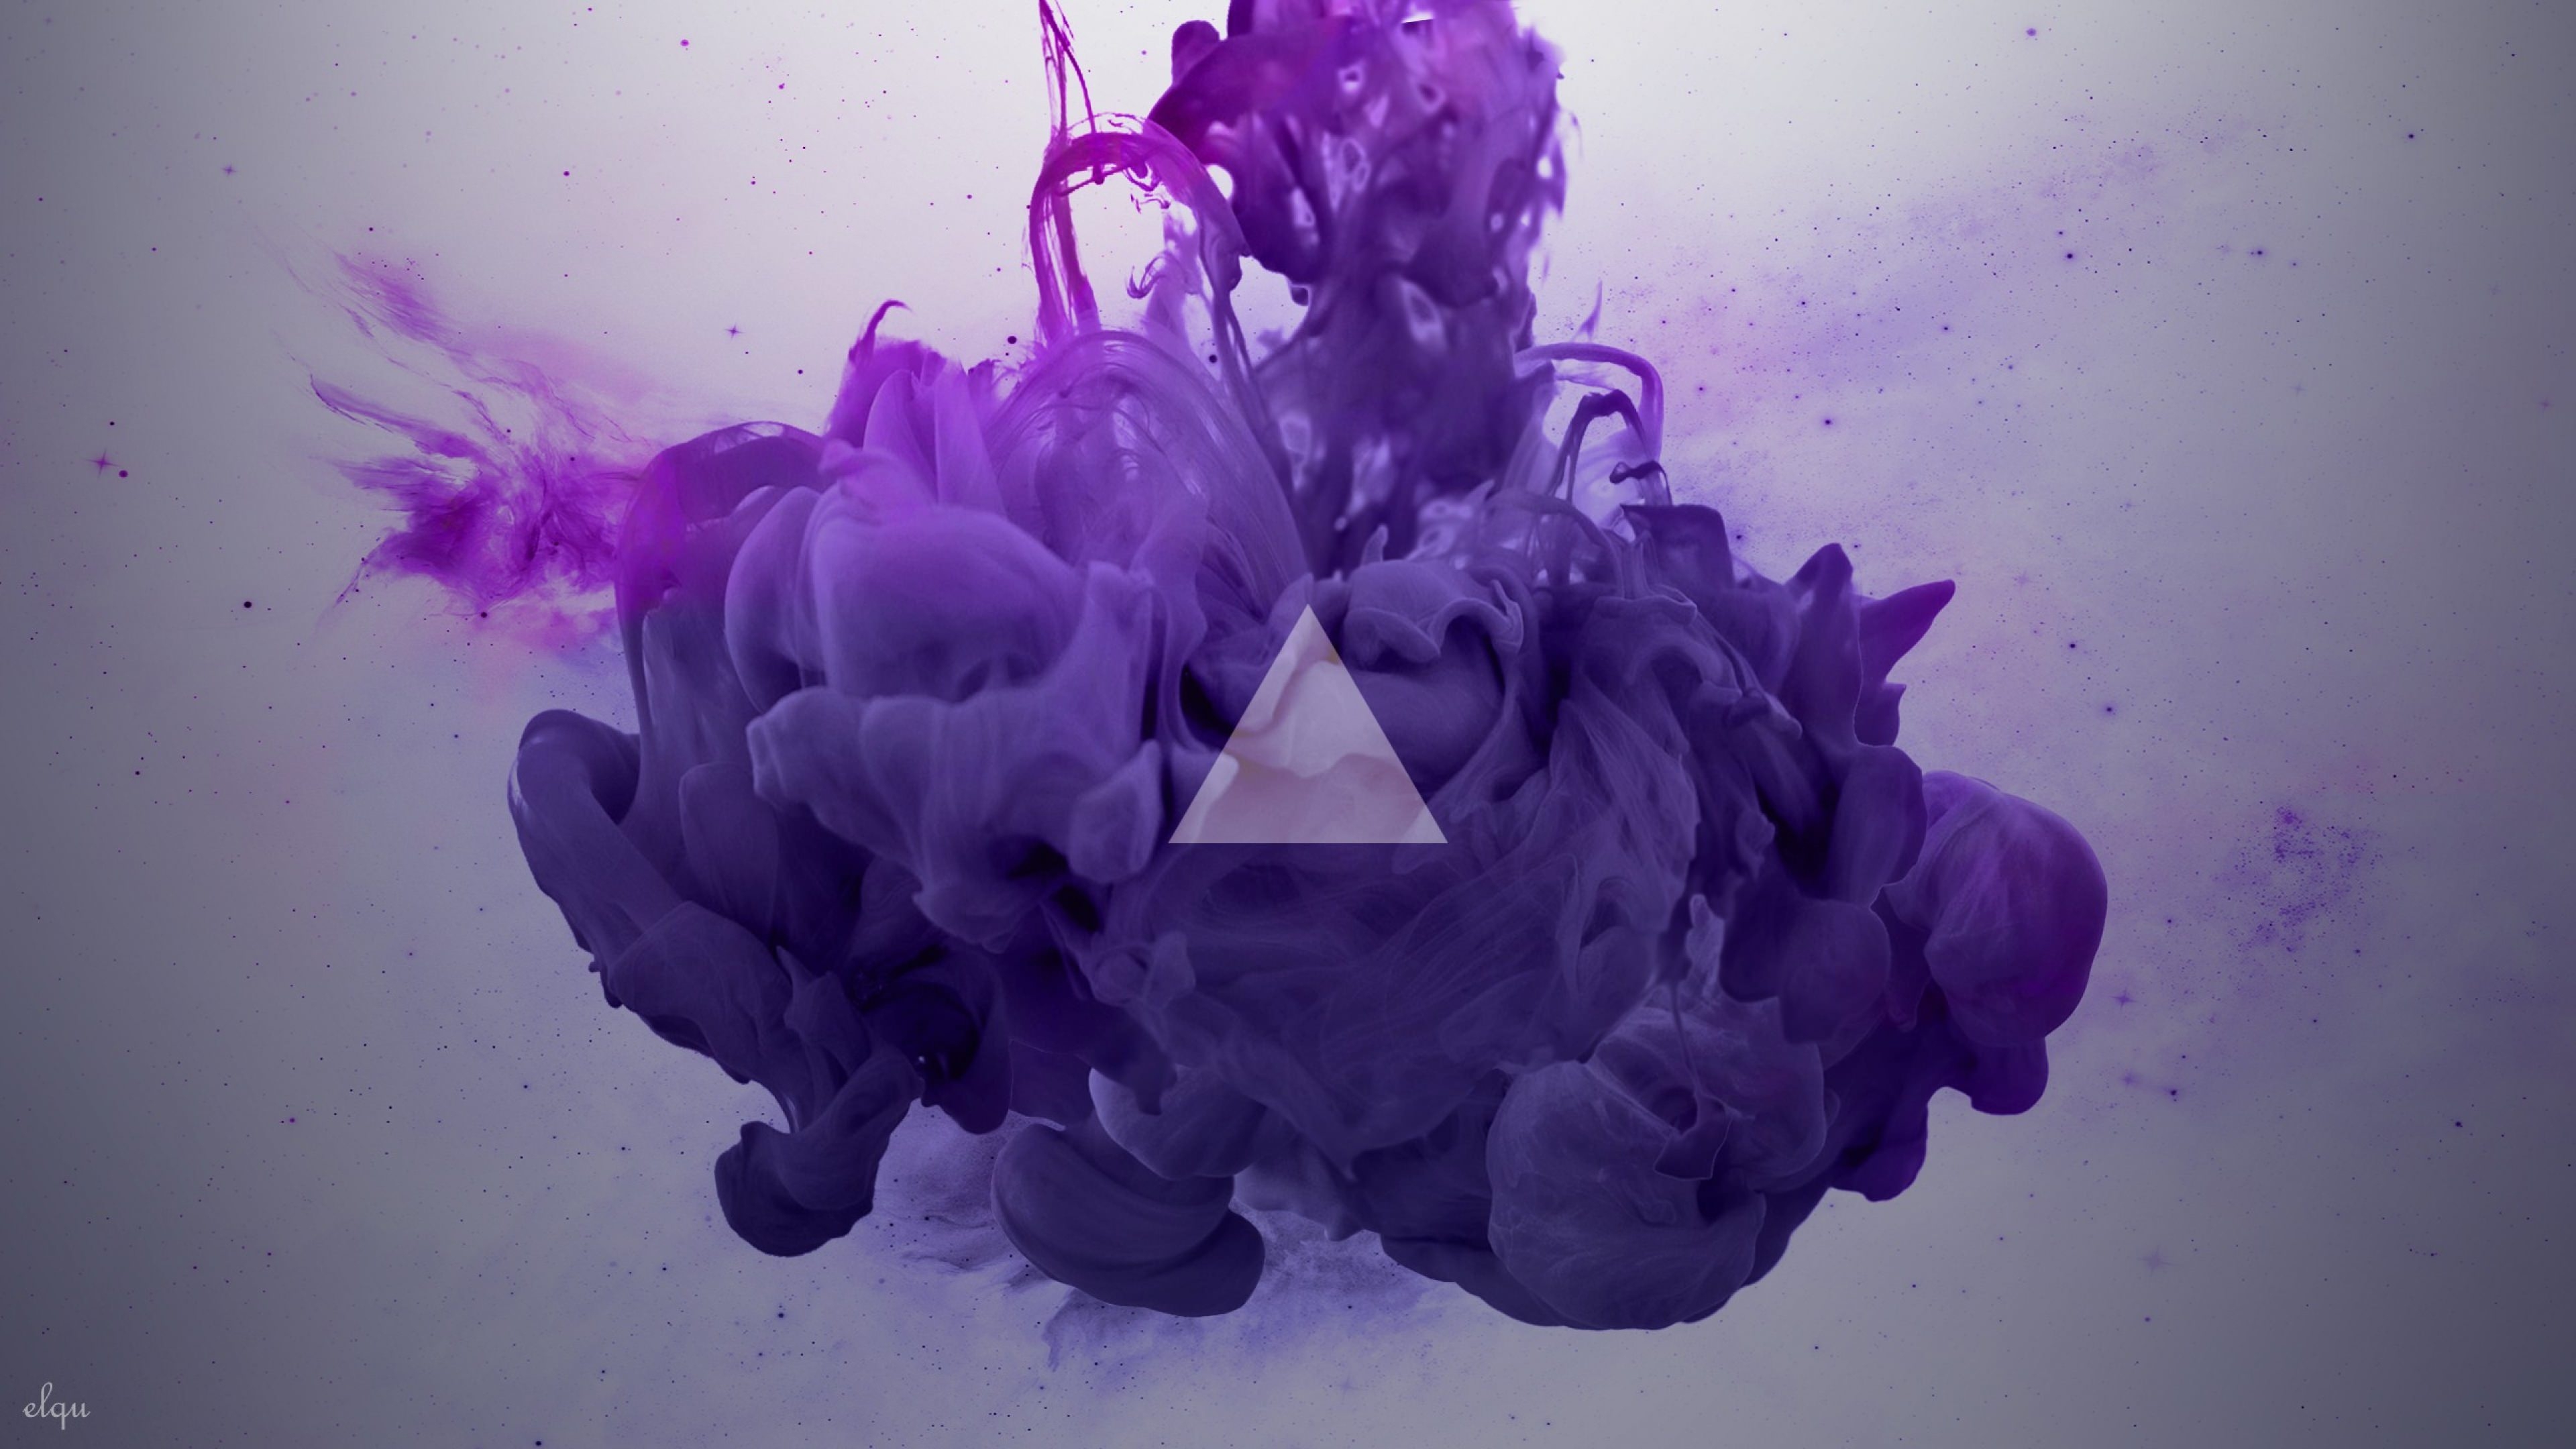 humo fondo de pantalla hd,púrpura,violeta,lavanda,encendiendo,flor